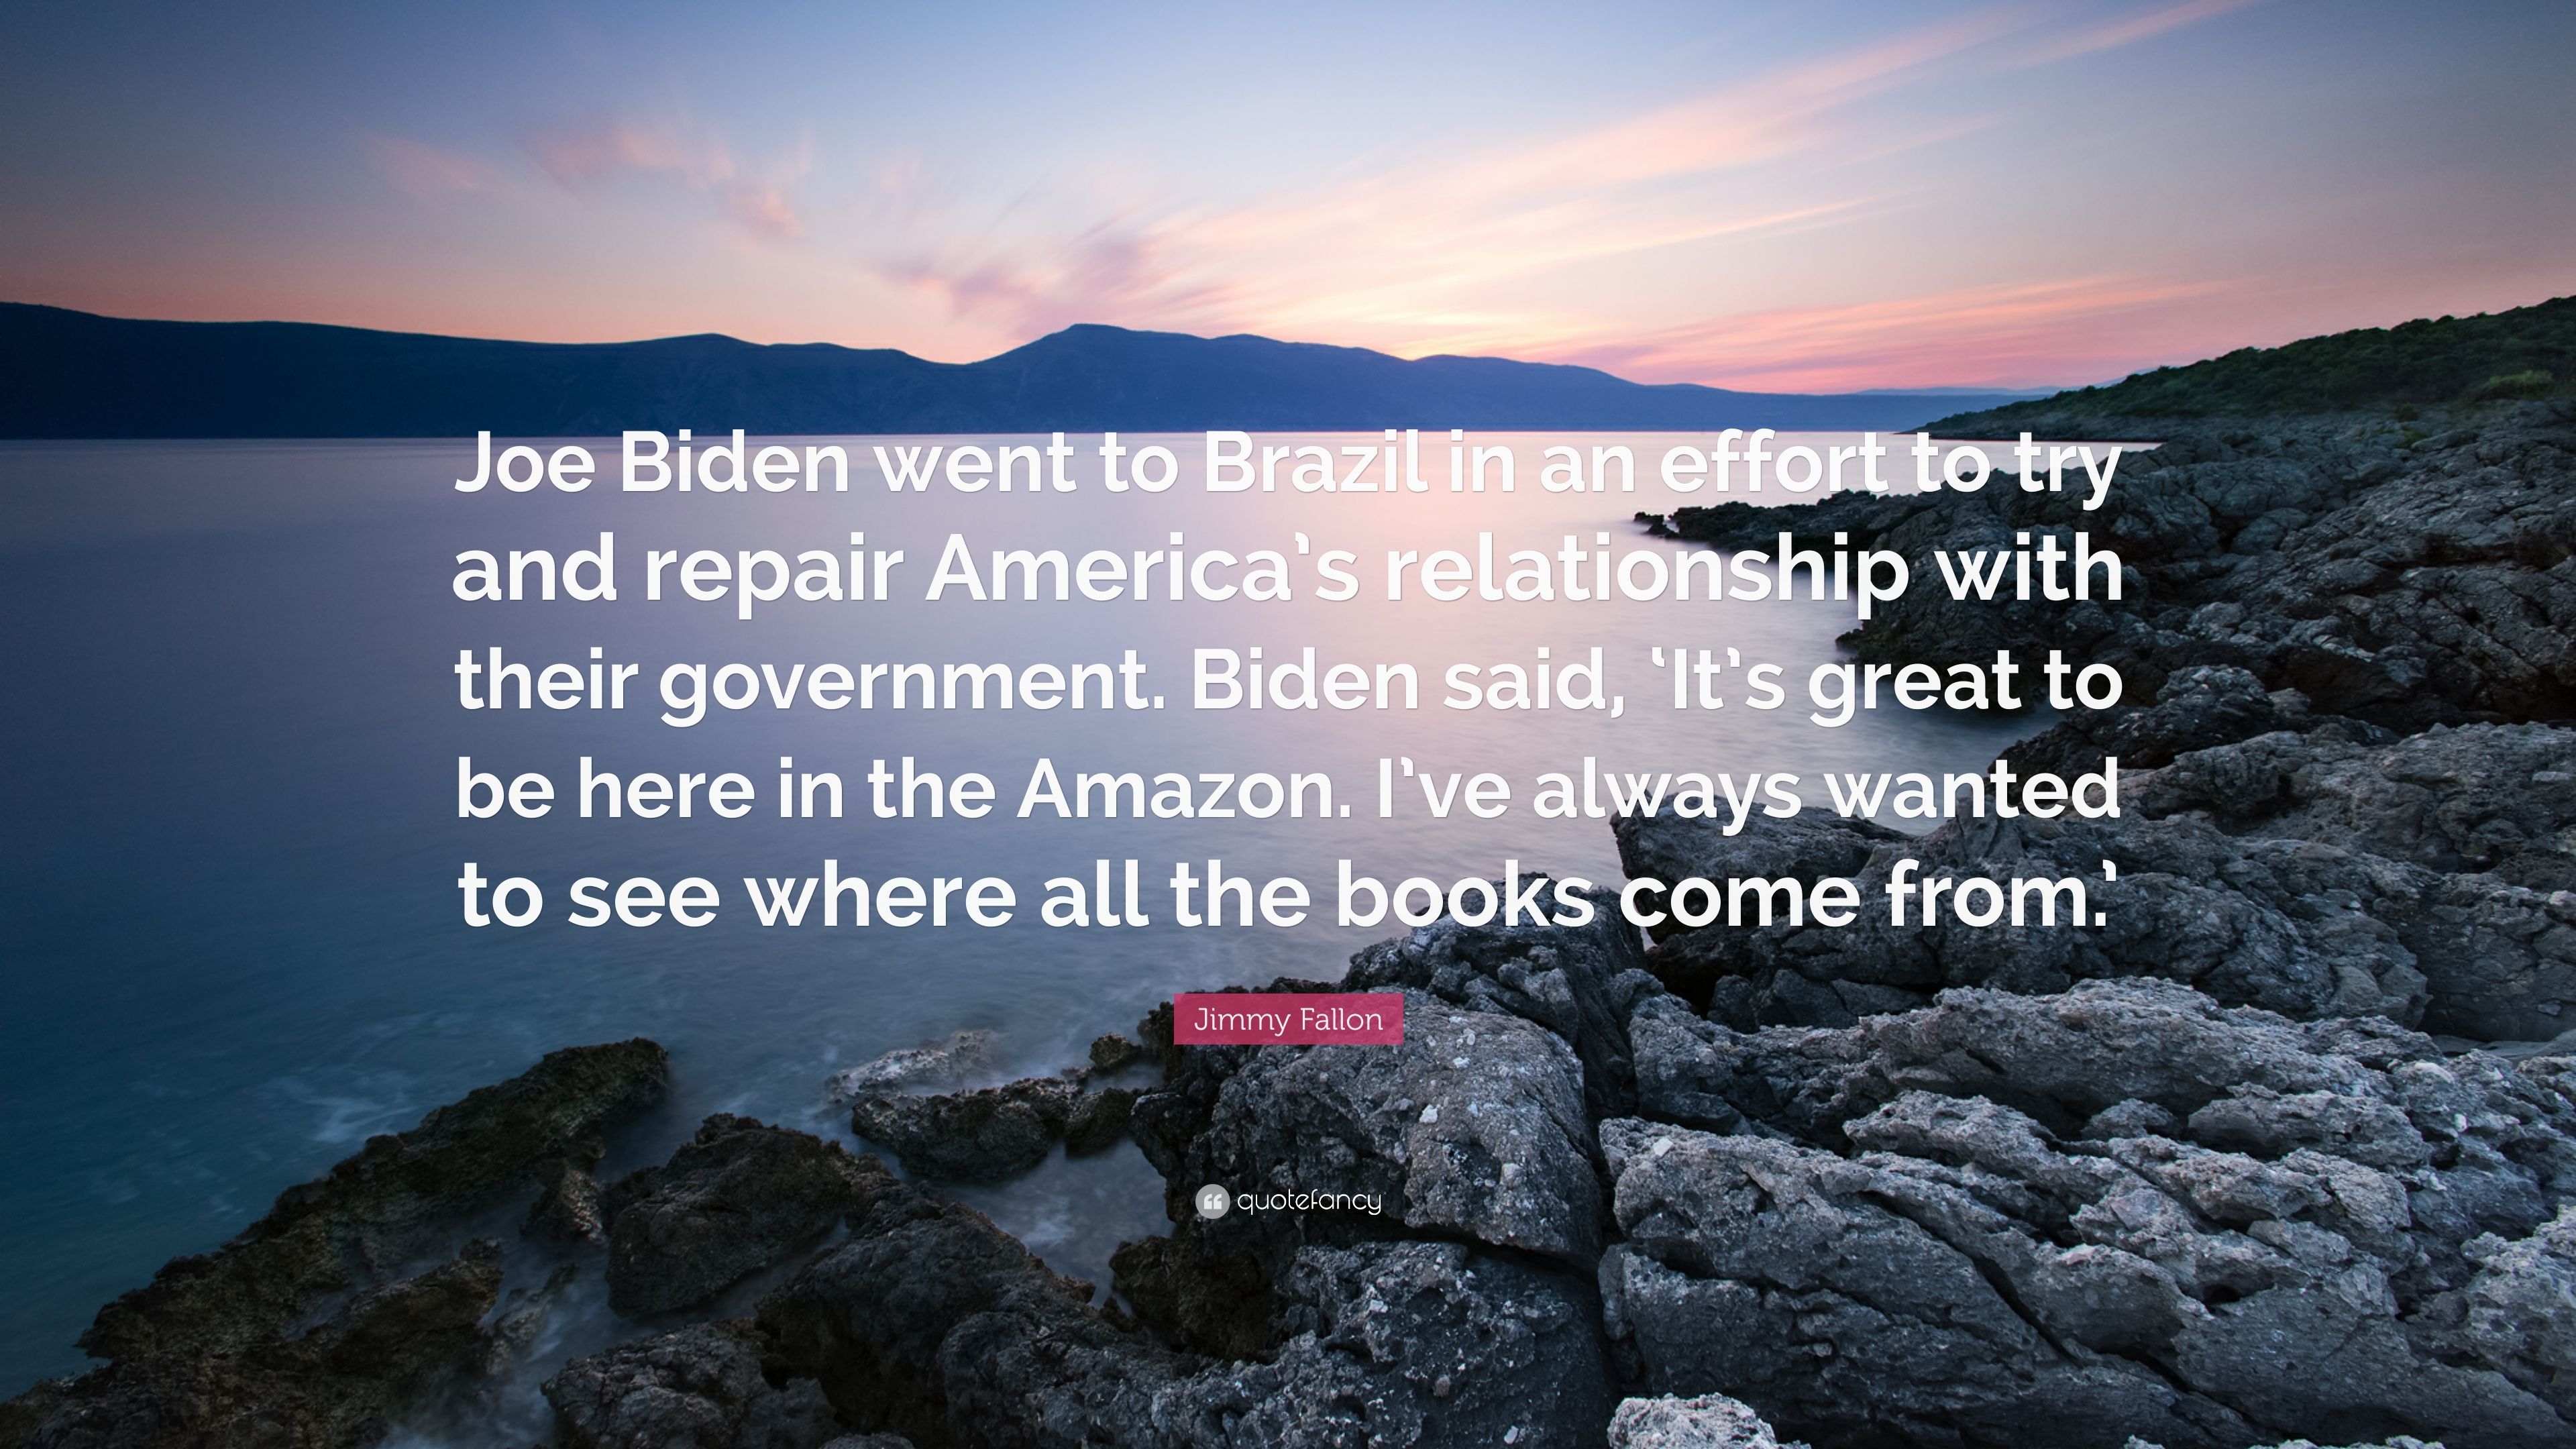 Jimmy Fallon Quote: “Joe Biden went to Brazil in an effort to try